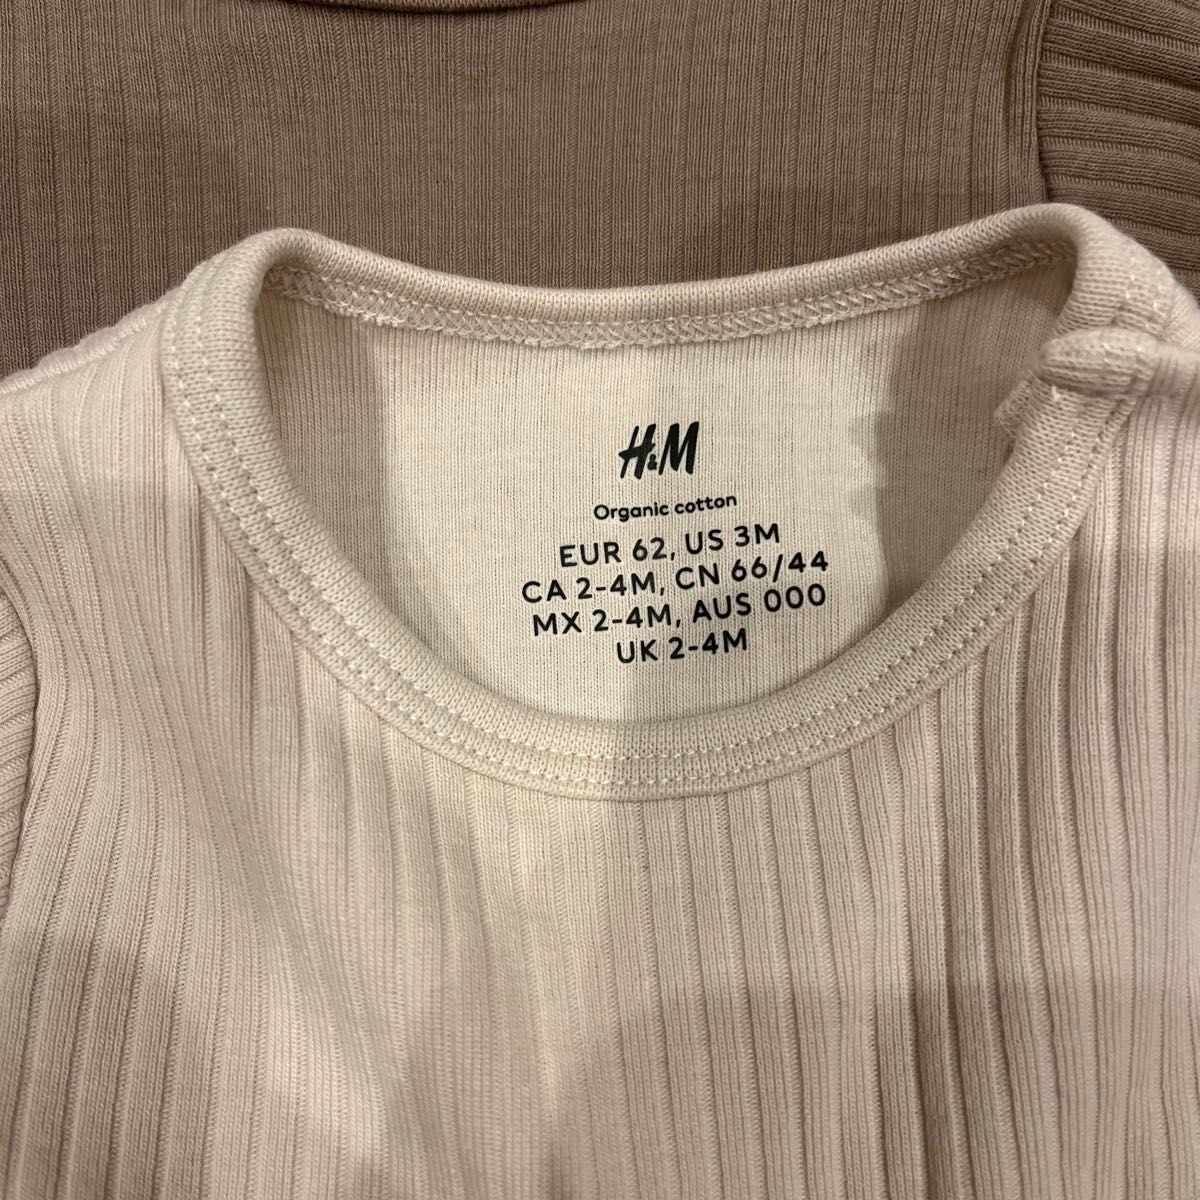 新品未使用 H&M リブボディスーツ 62 3枚セット 60サイズ ベビー服 赤ちゃん服 赤ちゃんインナー ボディスーツ